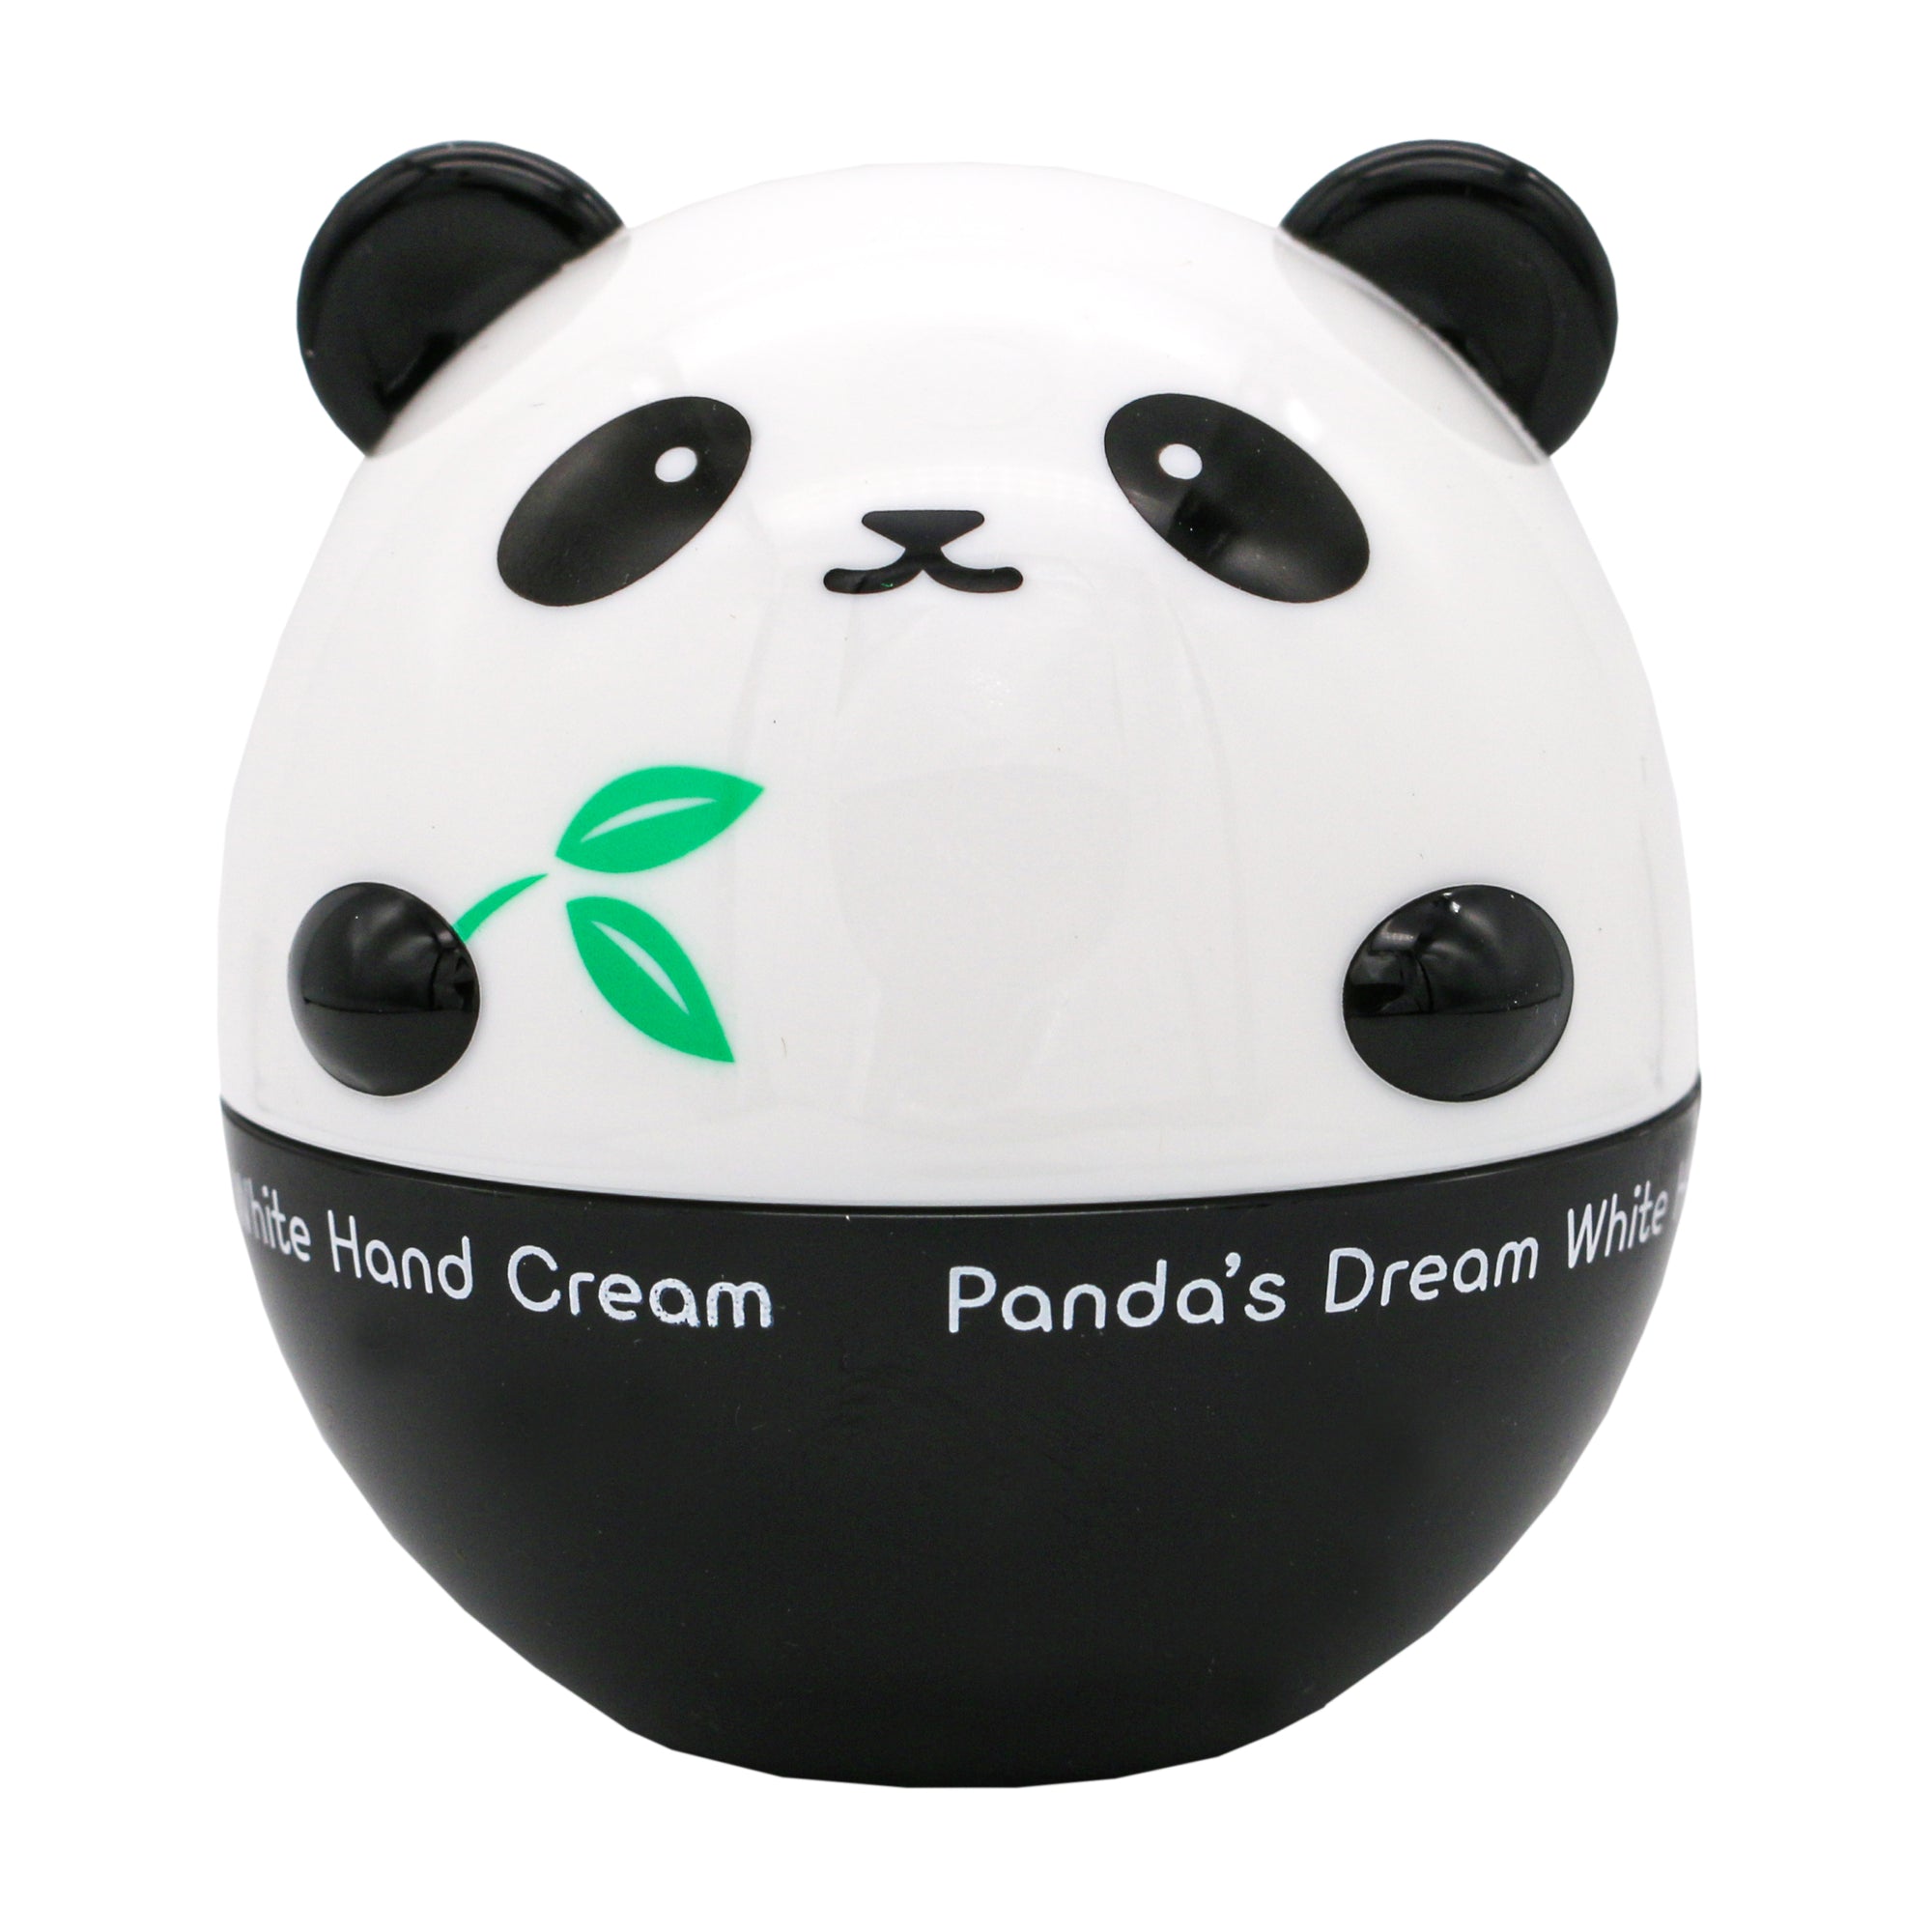 TONYMOLY Panda’s Dream Hand Cream - Brightening & Hydrating | Korean Skin Care